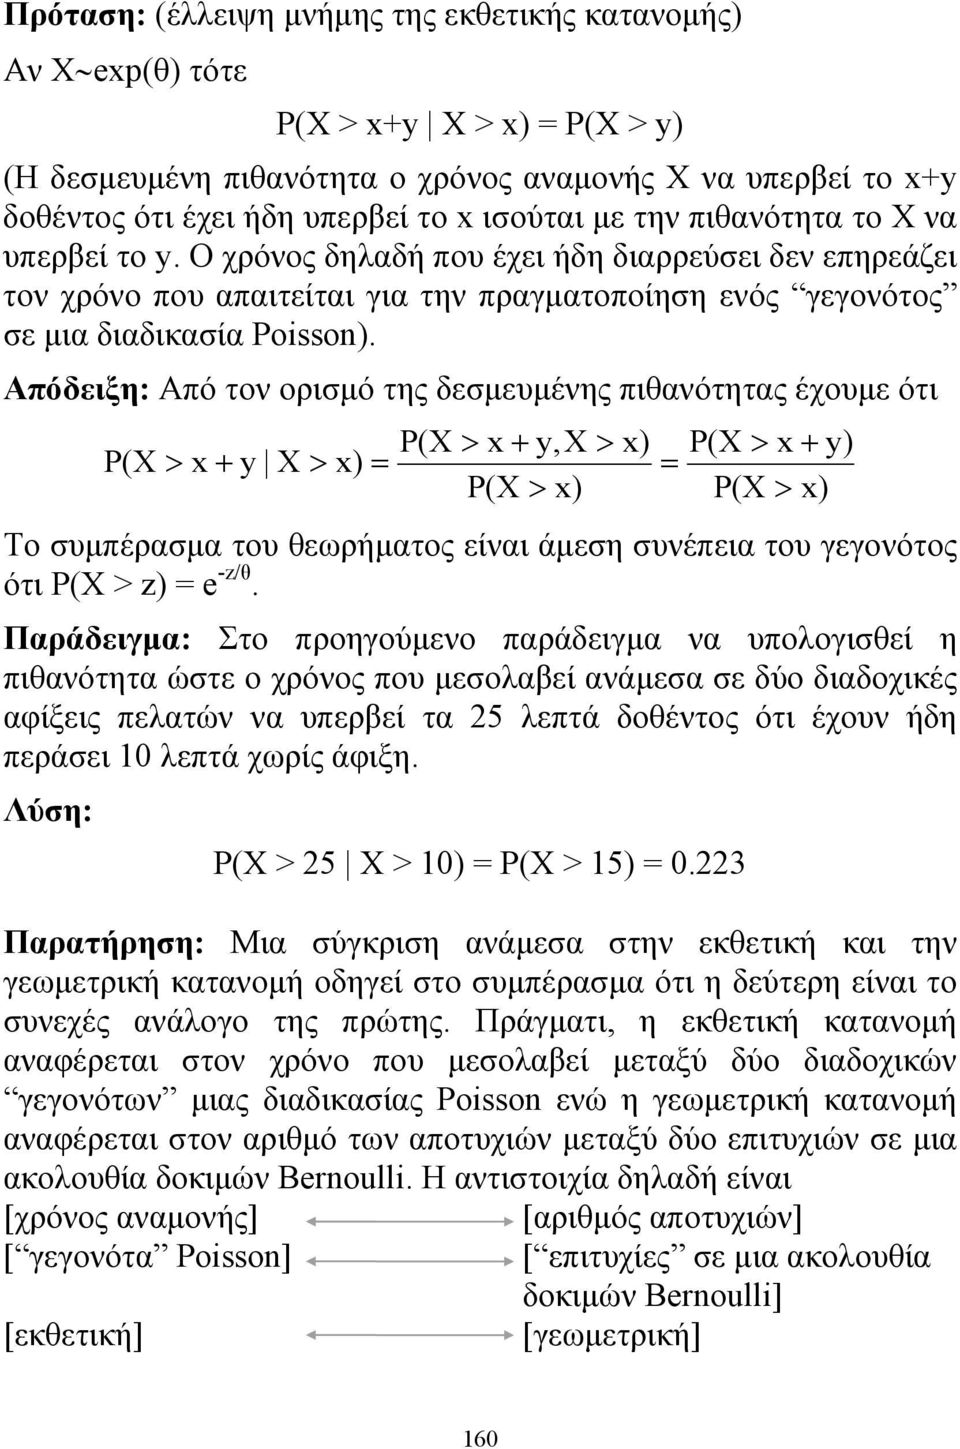 Απόδειξη: Από τον ορισμό της δεσμευμένης πιθανότητας έχουμε ότι P(X > x + y,x > x) P(X > x + y) P(X > x + y X > x) P(X > x) P(X > x) Το συμπέρασμα του θεωρήματος είναι άμεση συνέπεια του γεγονότος